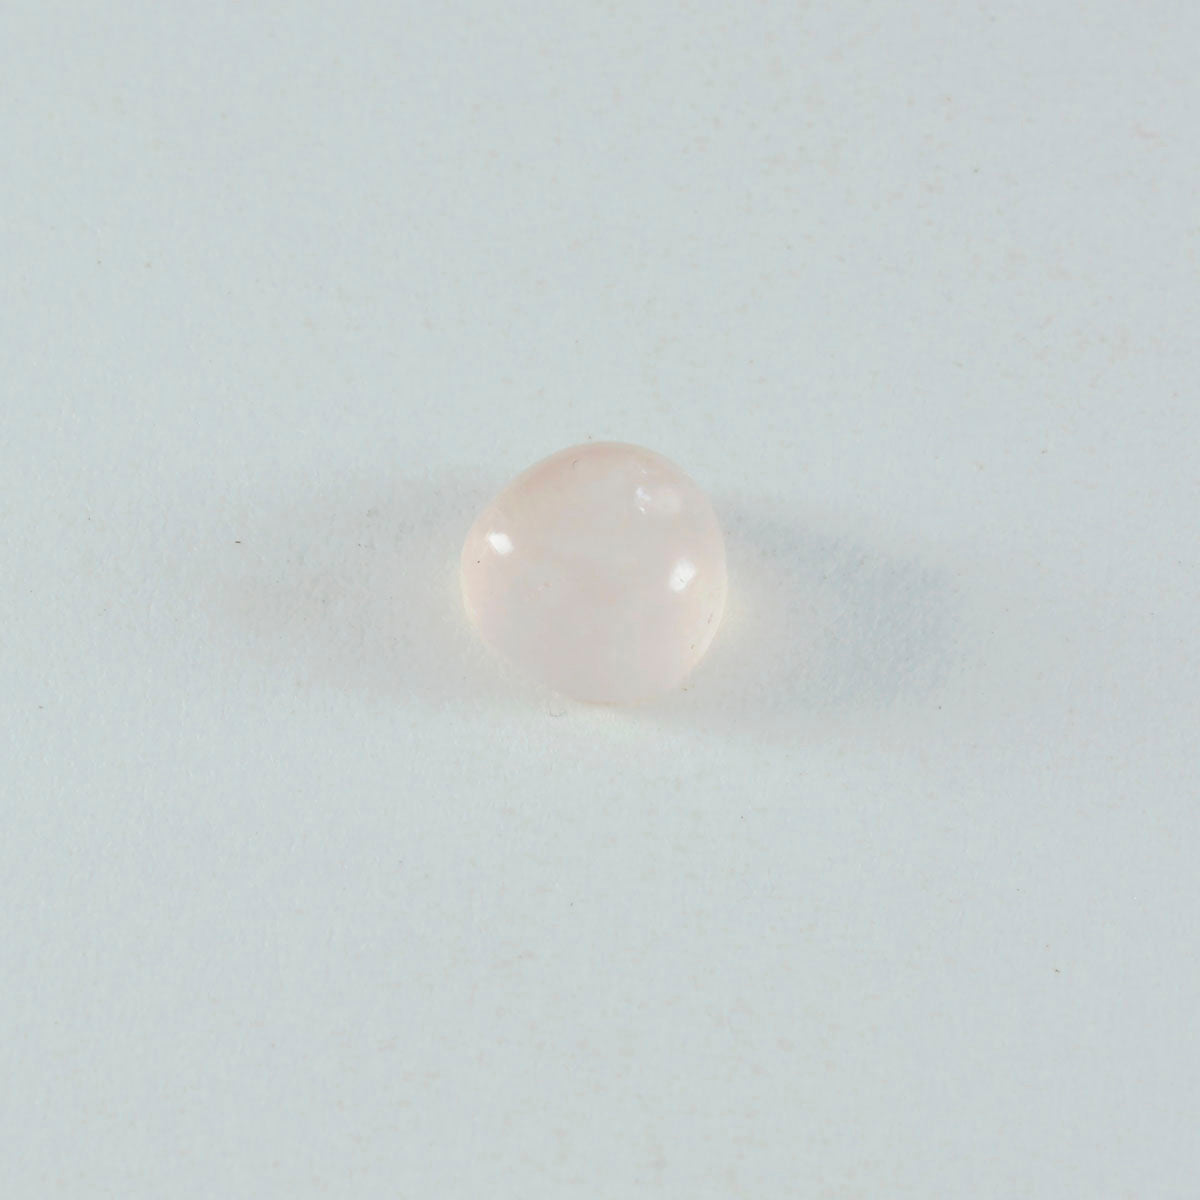 riyogems 1 pieza cabujón de cuarzo rosa 13x13 mm forma de corazón piedra suelta de calidad a+